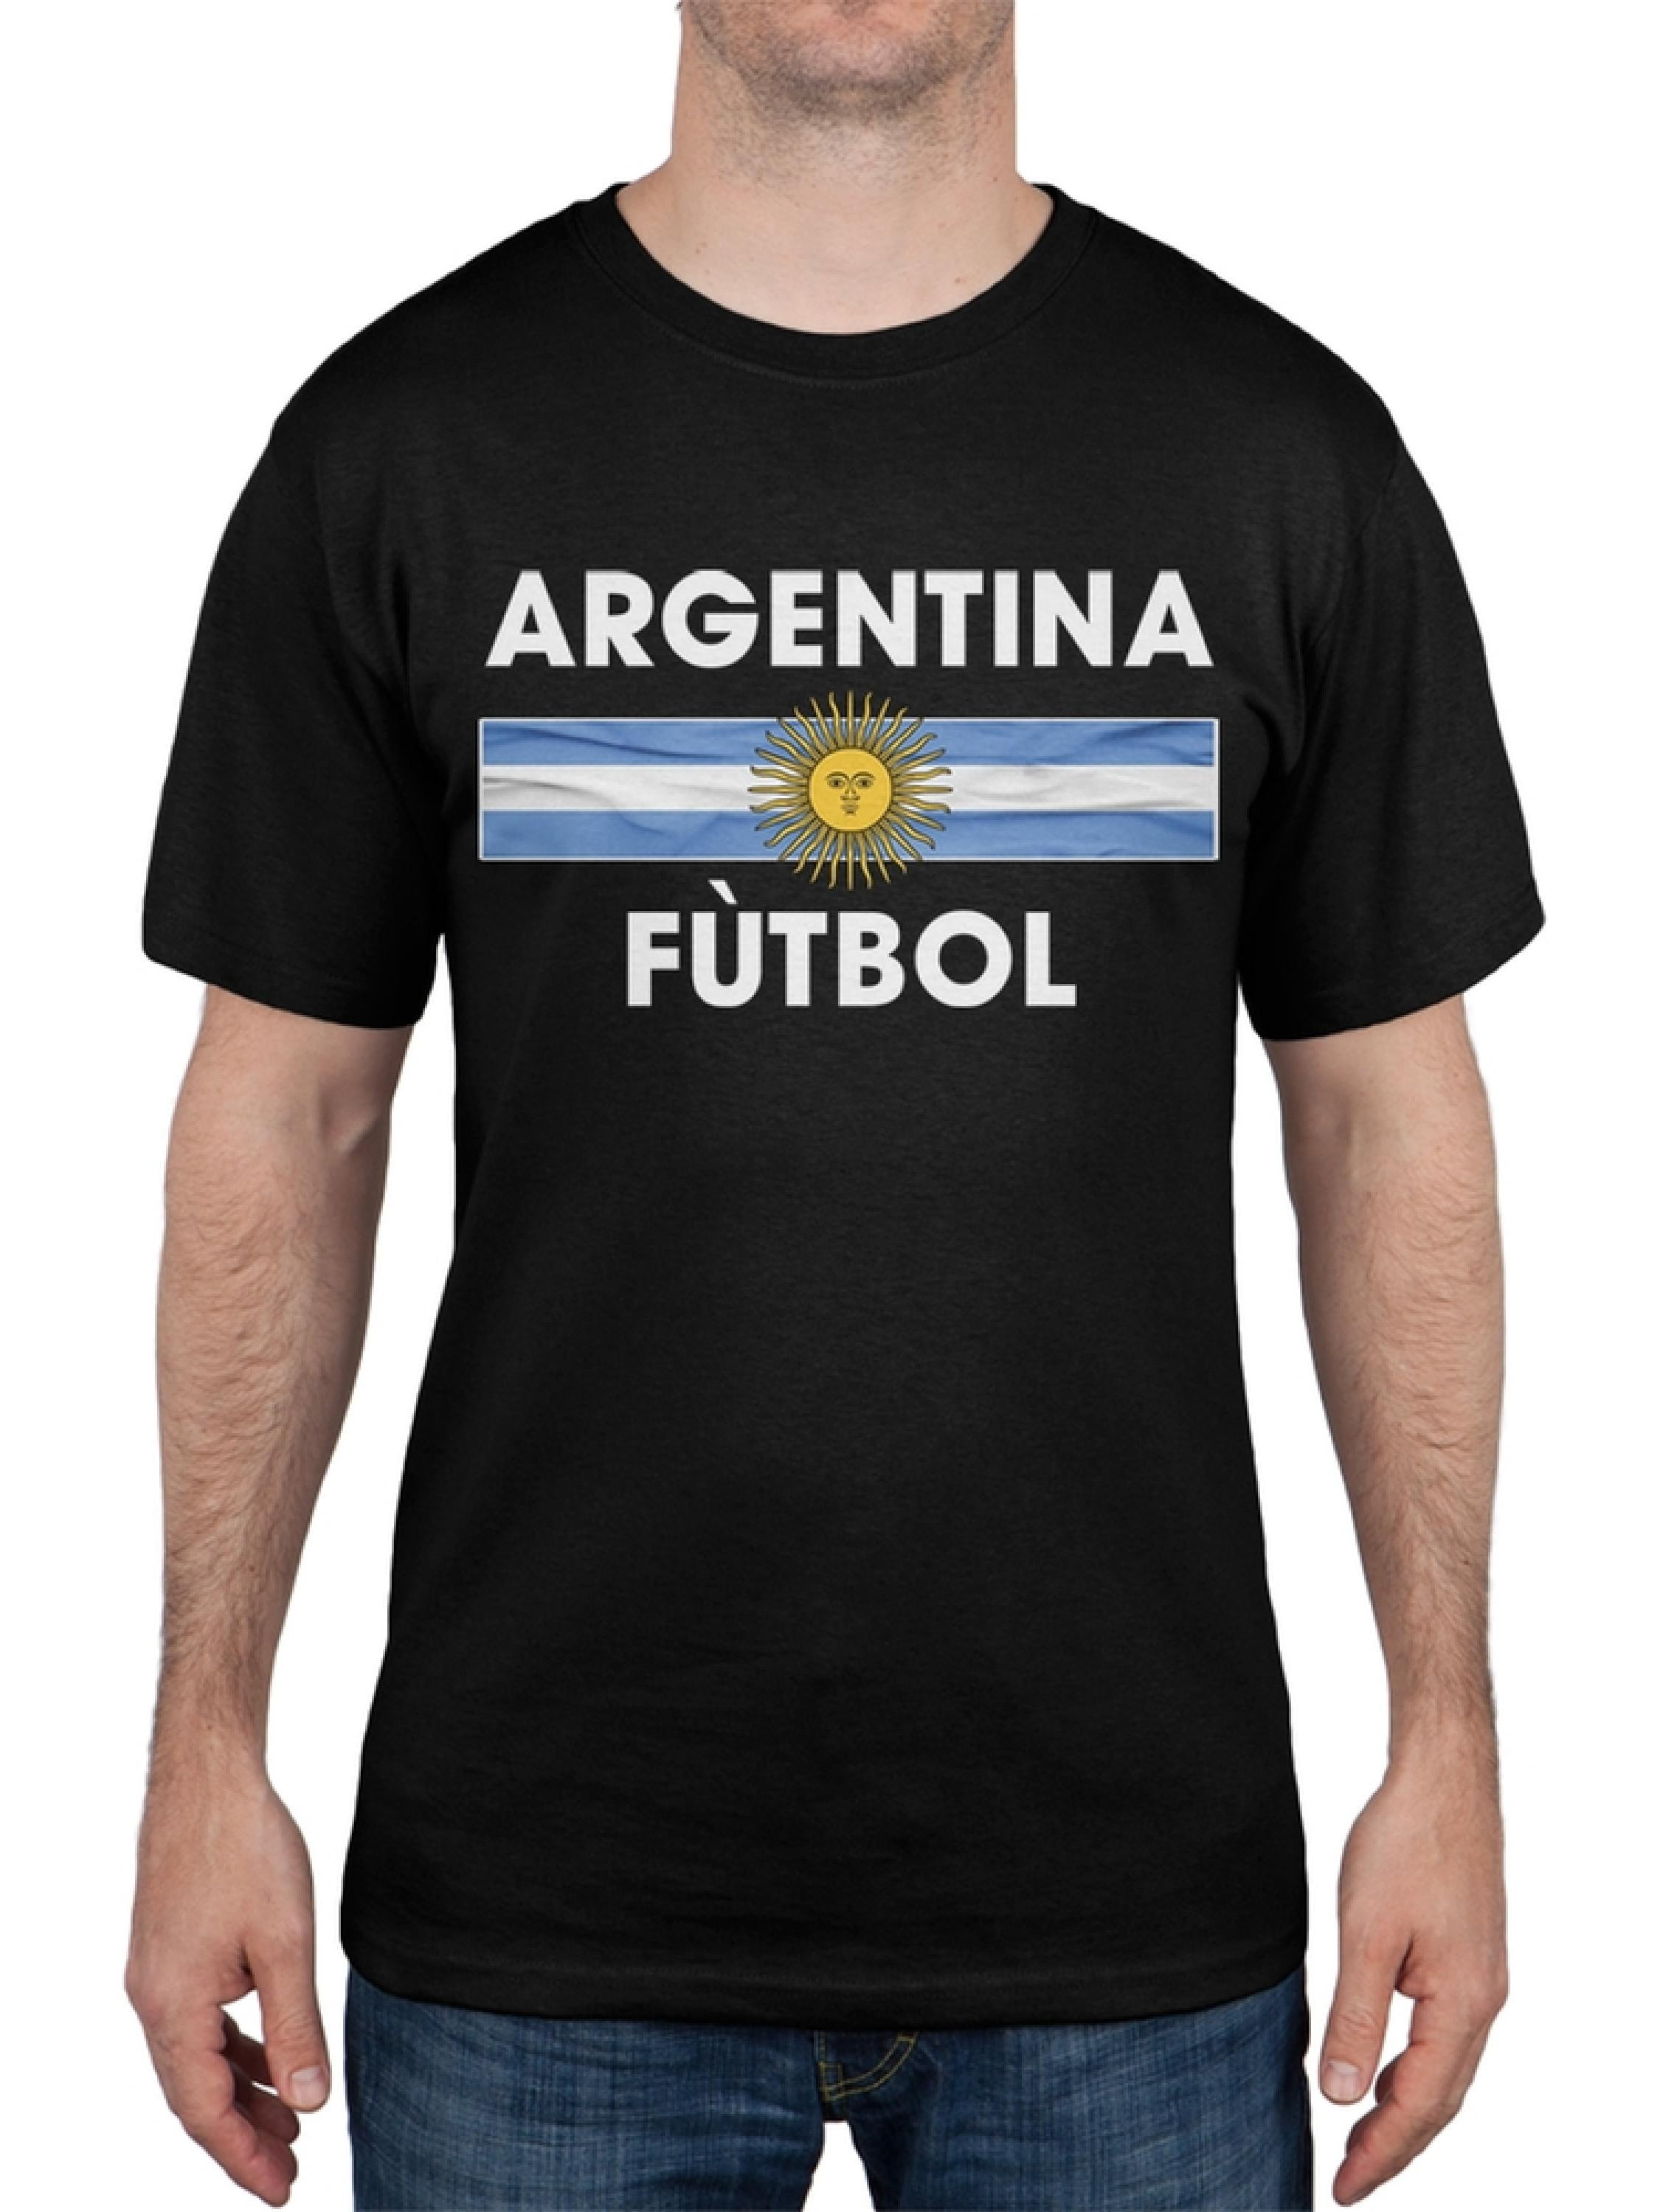 FIFA World Cup Argentina Crest Black Futbol Soccer TShirt XLarge